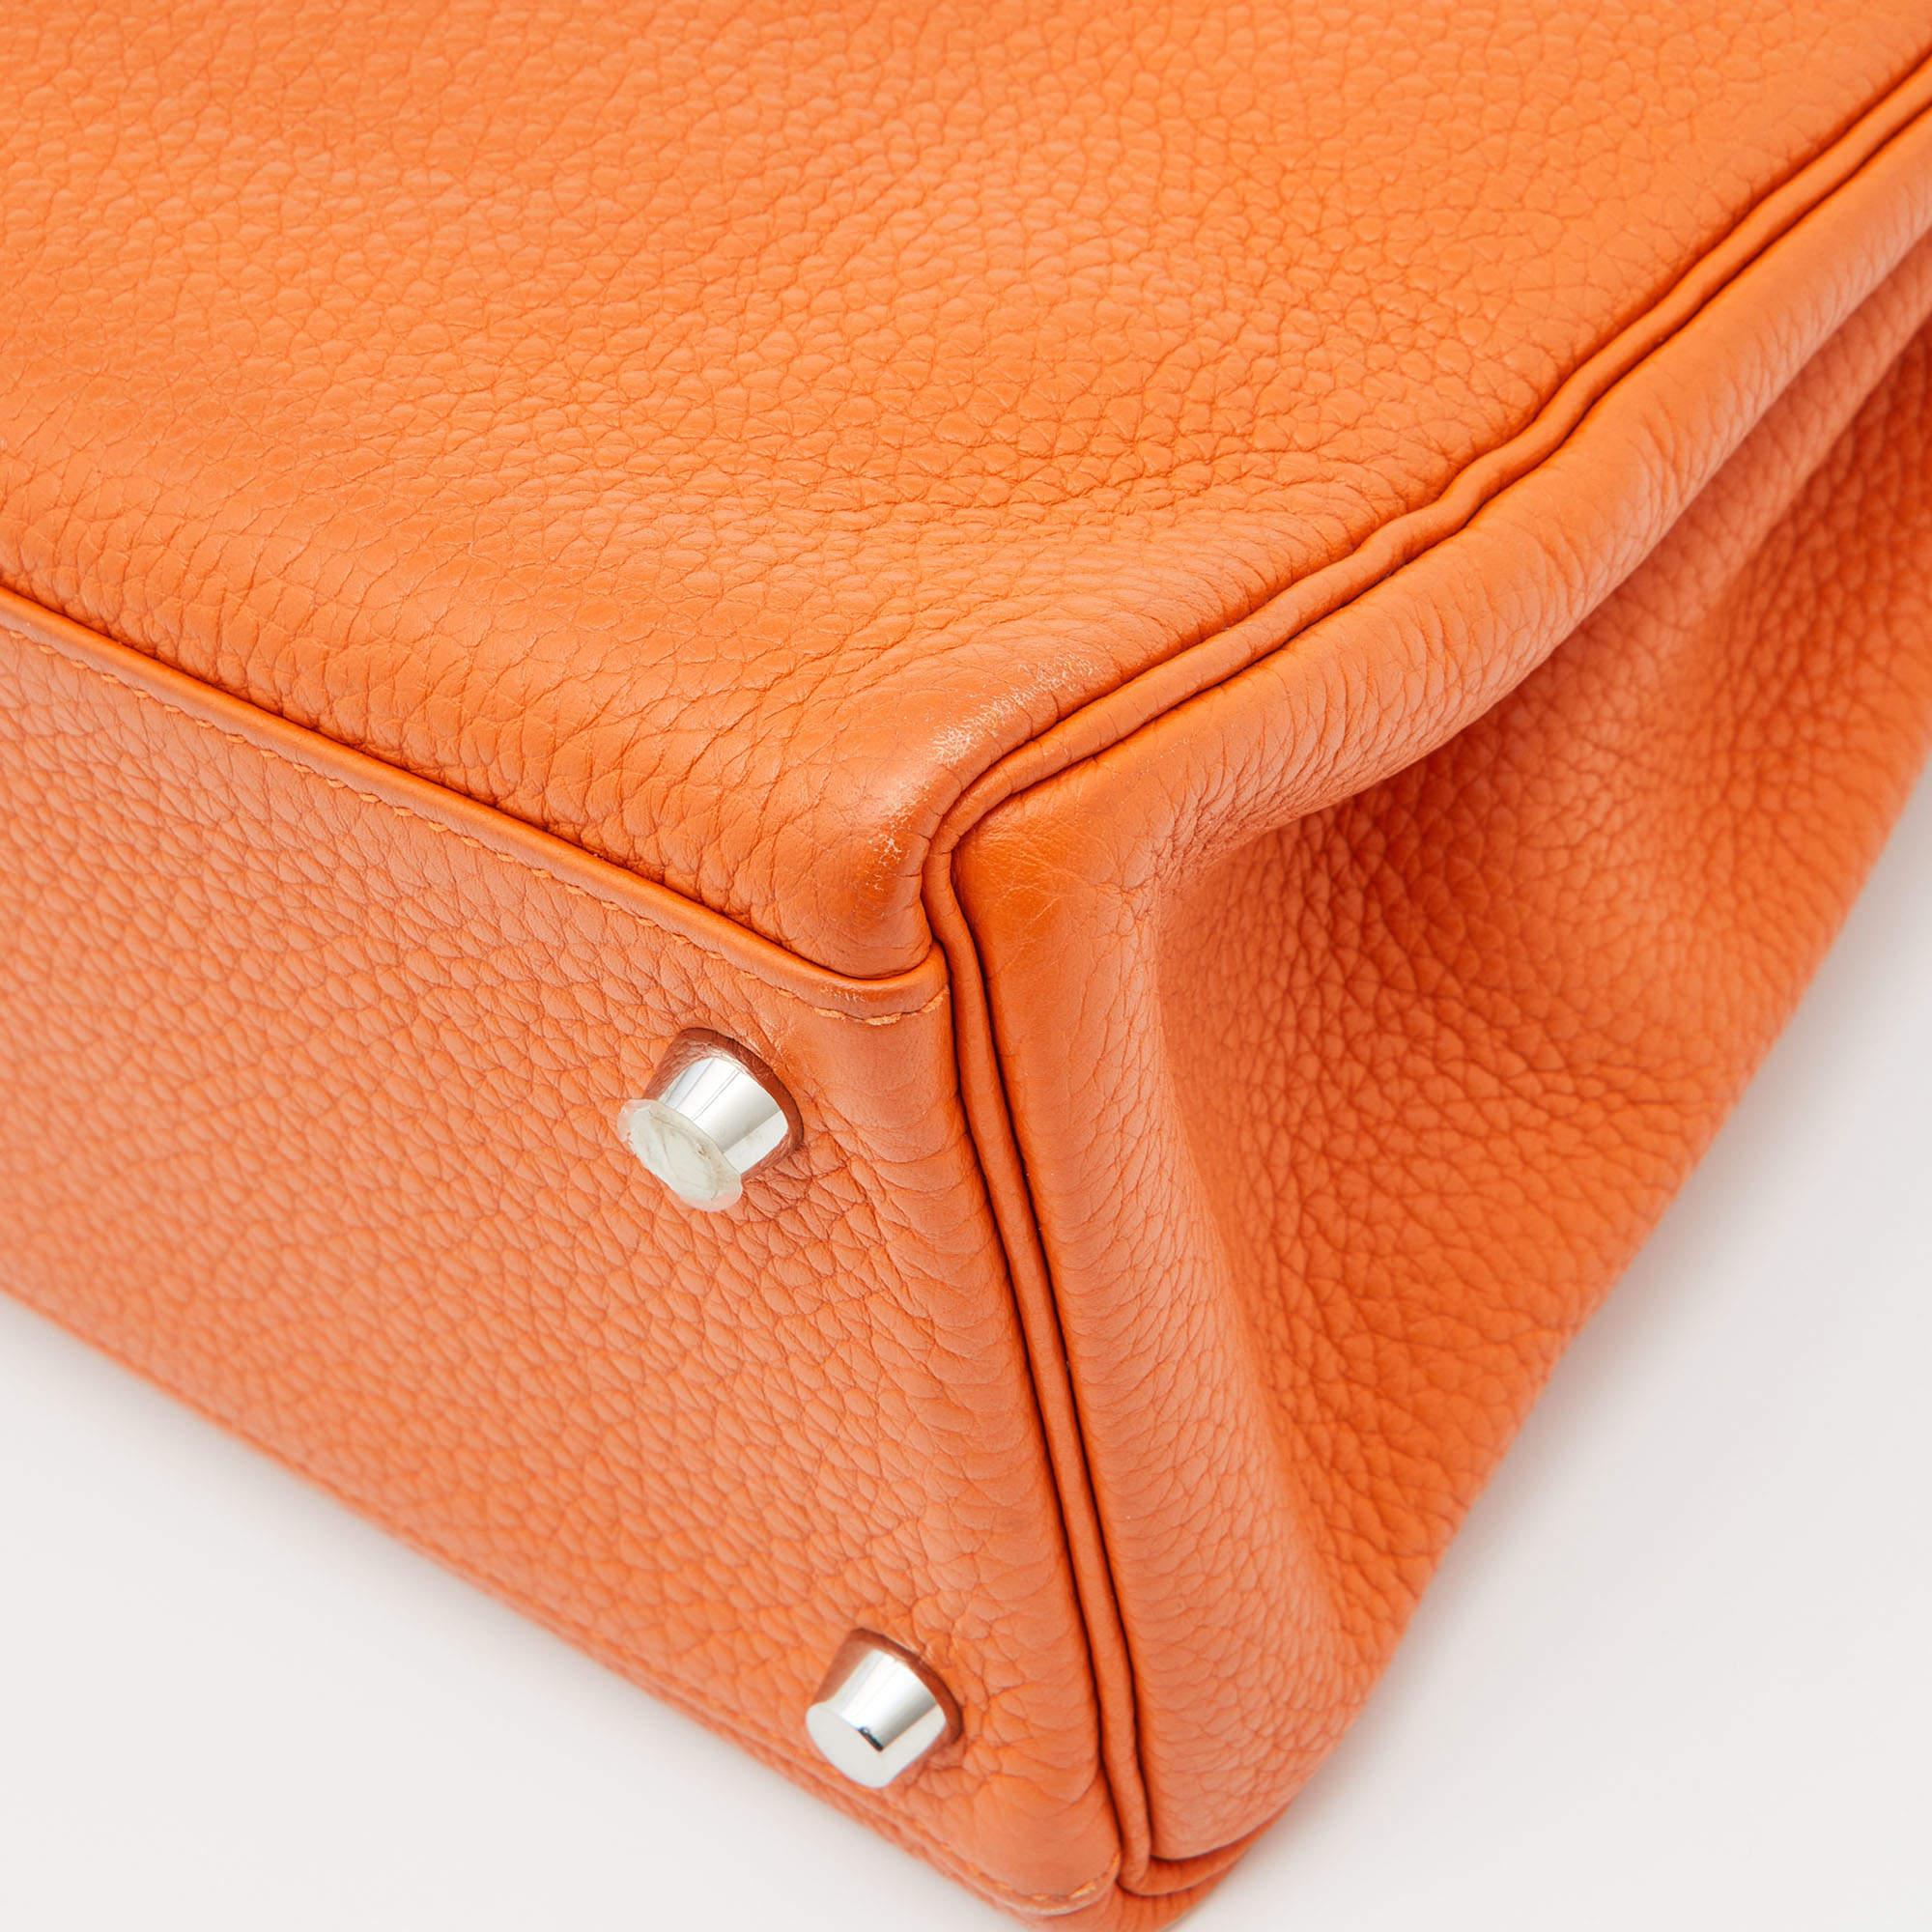 Hermes Orange Taurillion Clemence Leather Palladium Finish Kelly Retourne 32 Bag 15